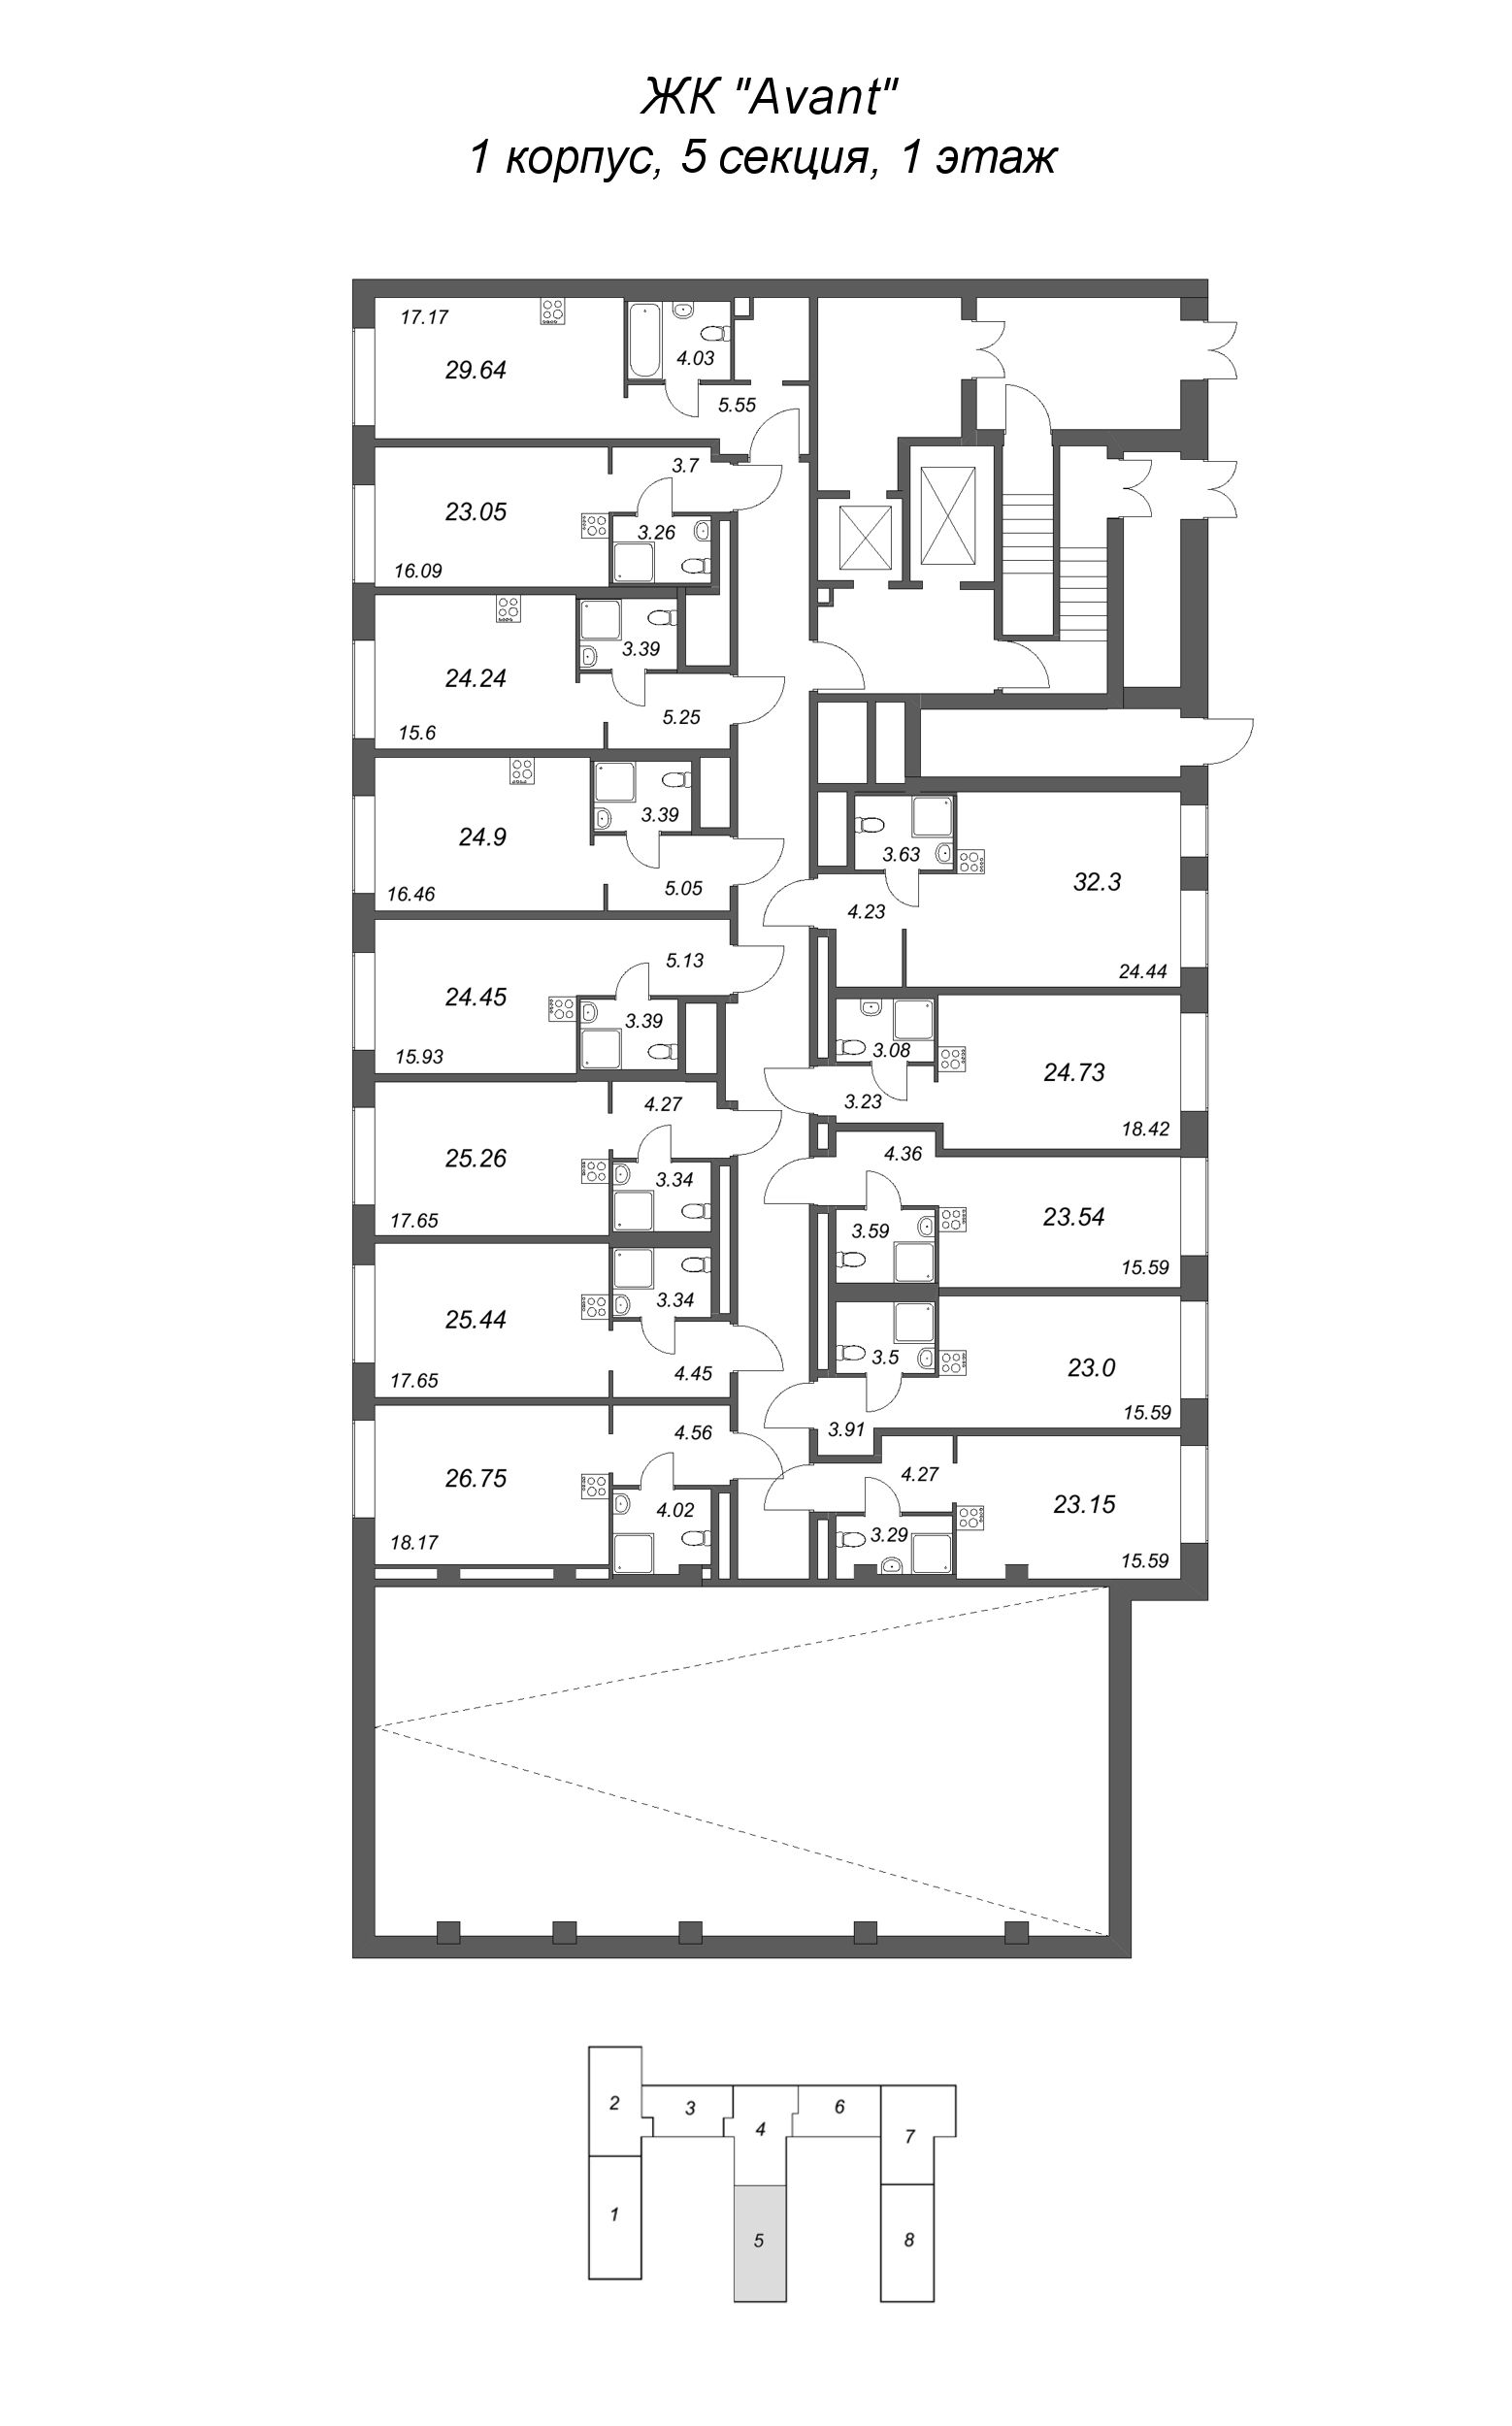 Квартира-студия, 23.15 м² в ЖК "Avant" - планировка этажа